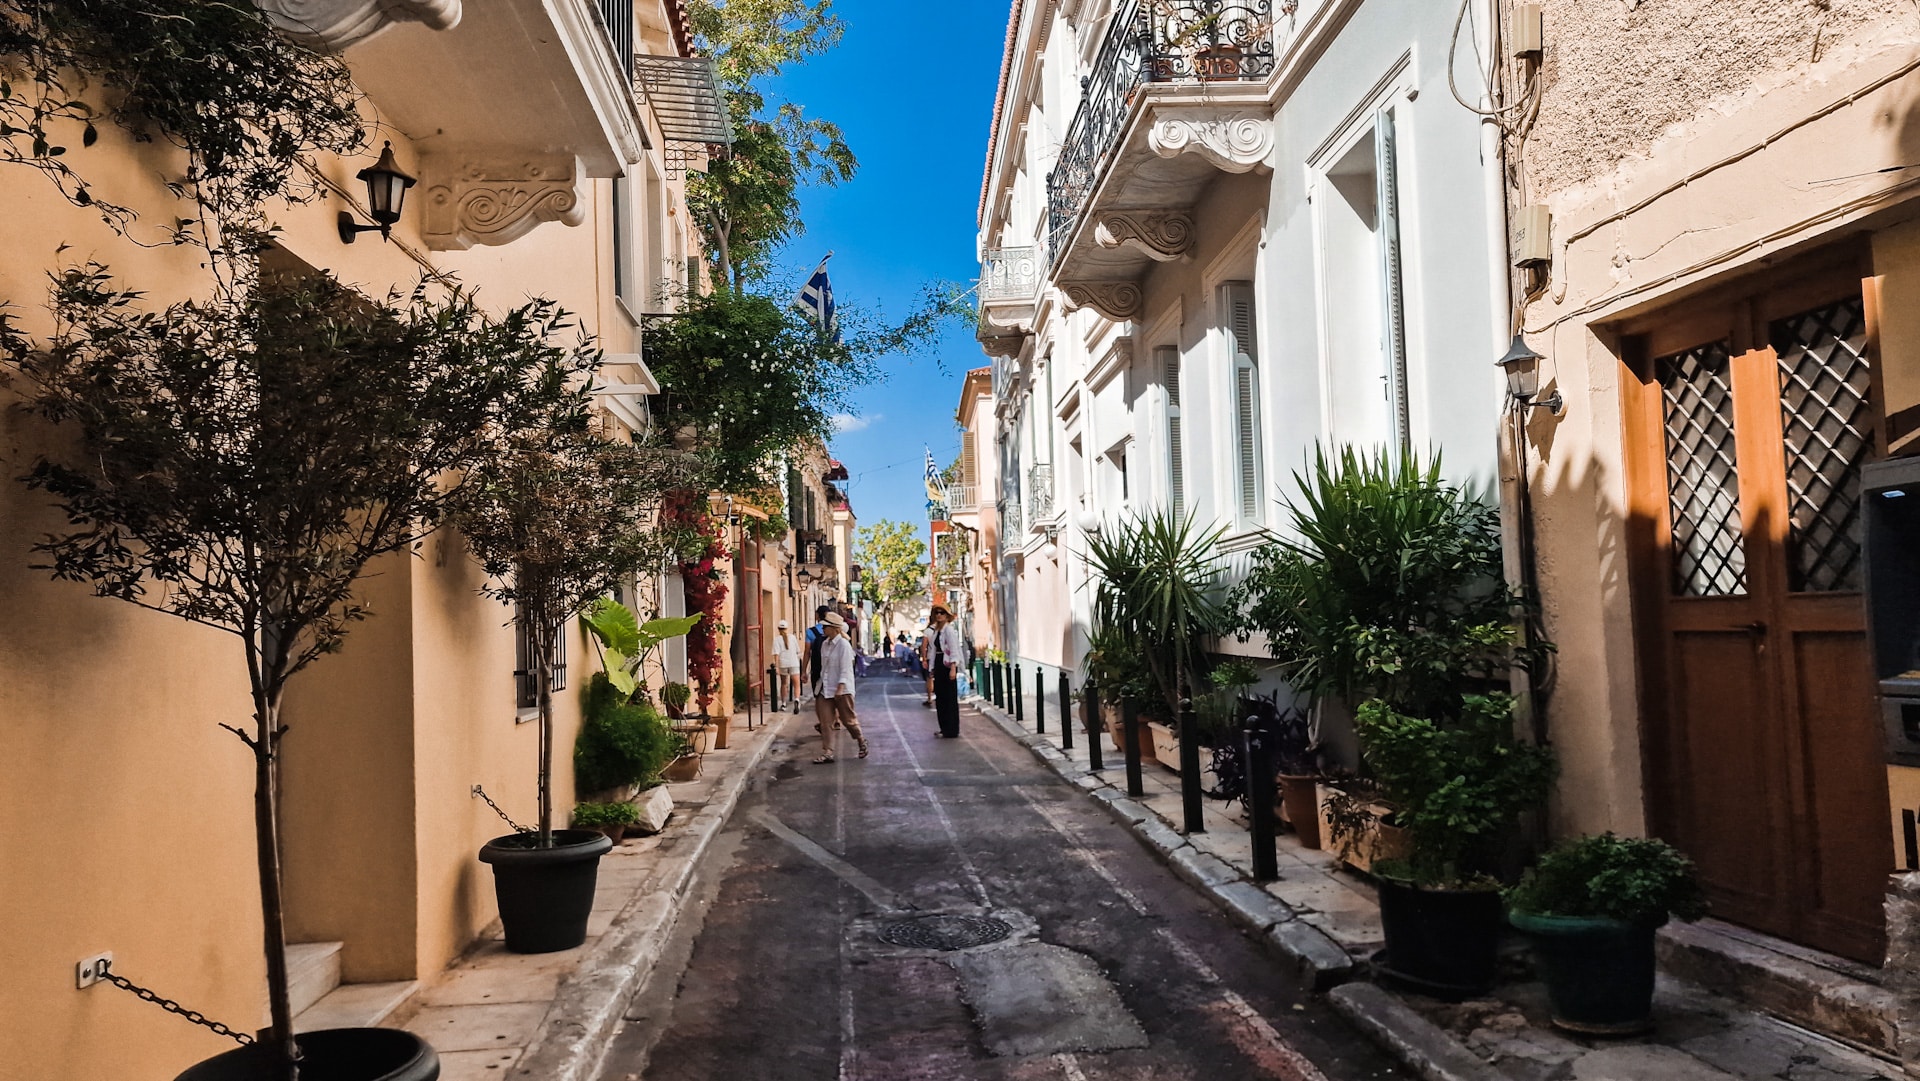 Plaka es un pintoresco barrio en el corazón de Atenas, conocido por sus callejuelas, colores vibrantes y encanto histórico.